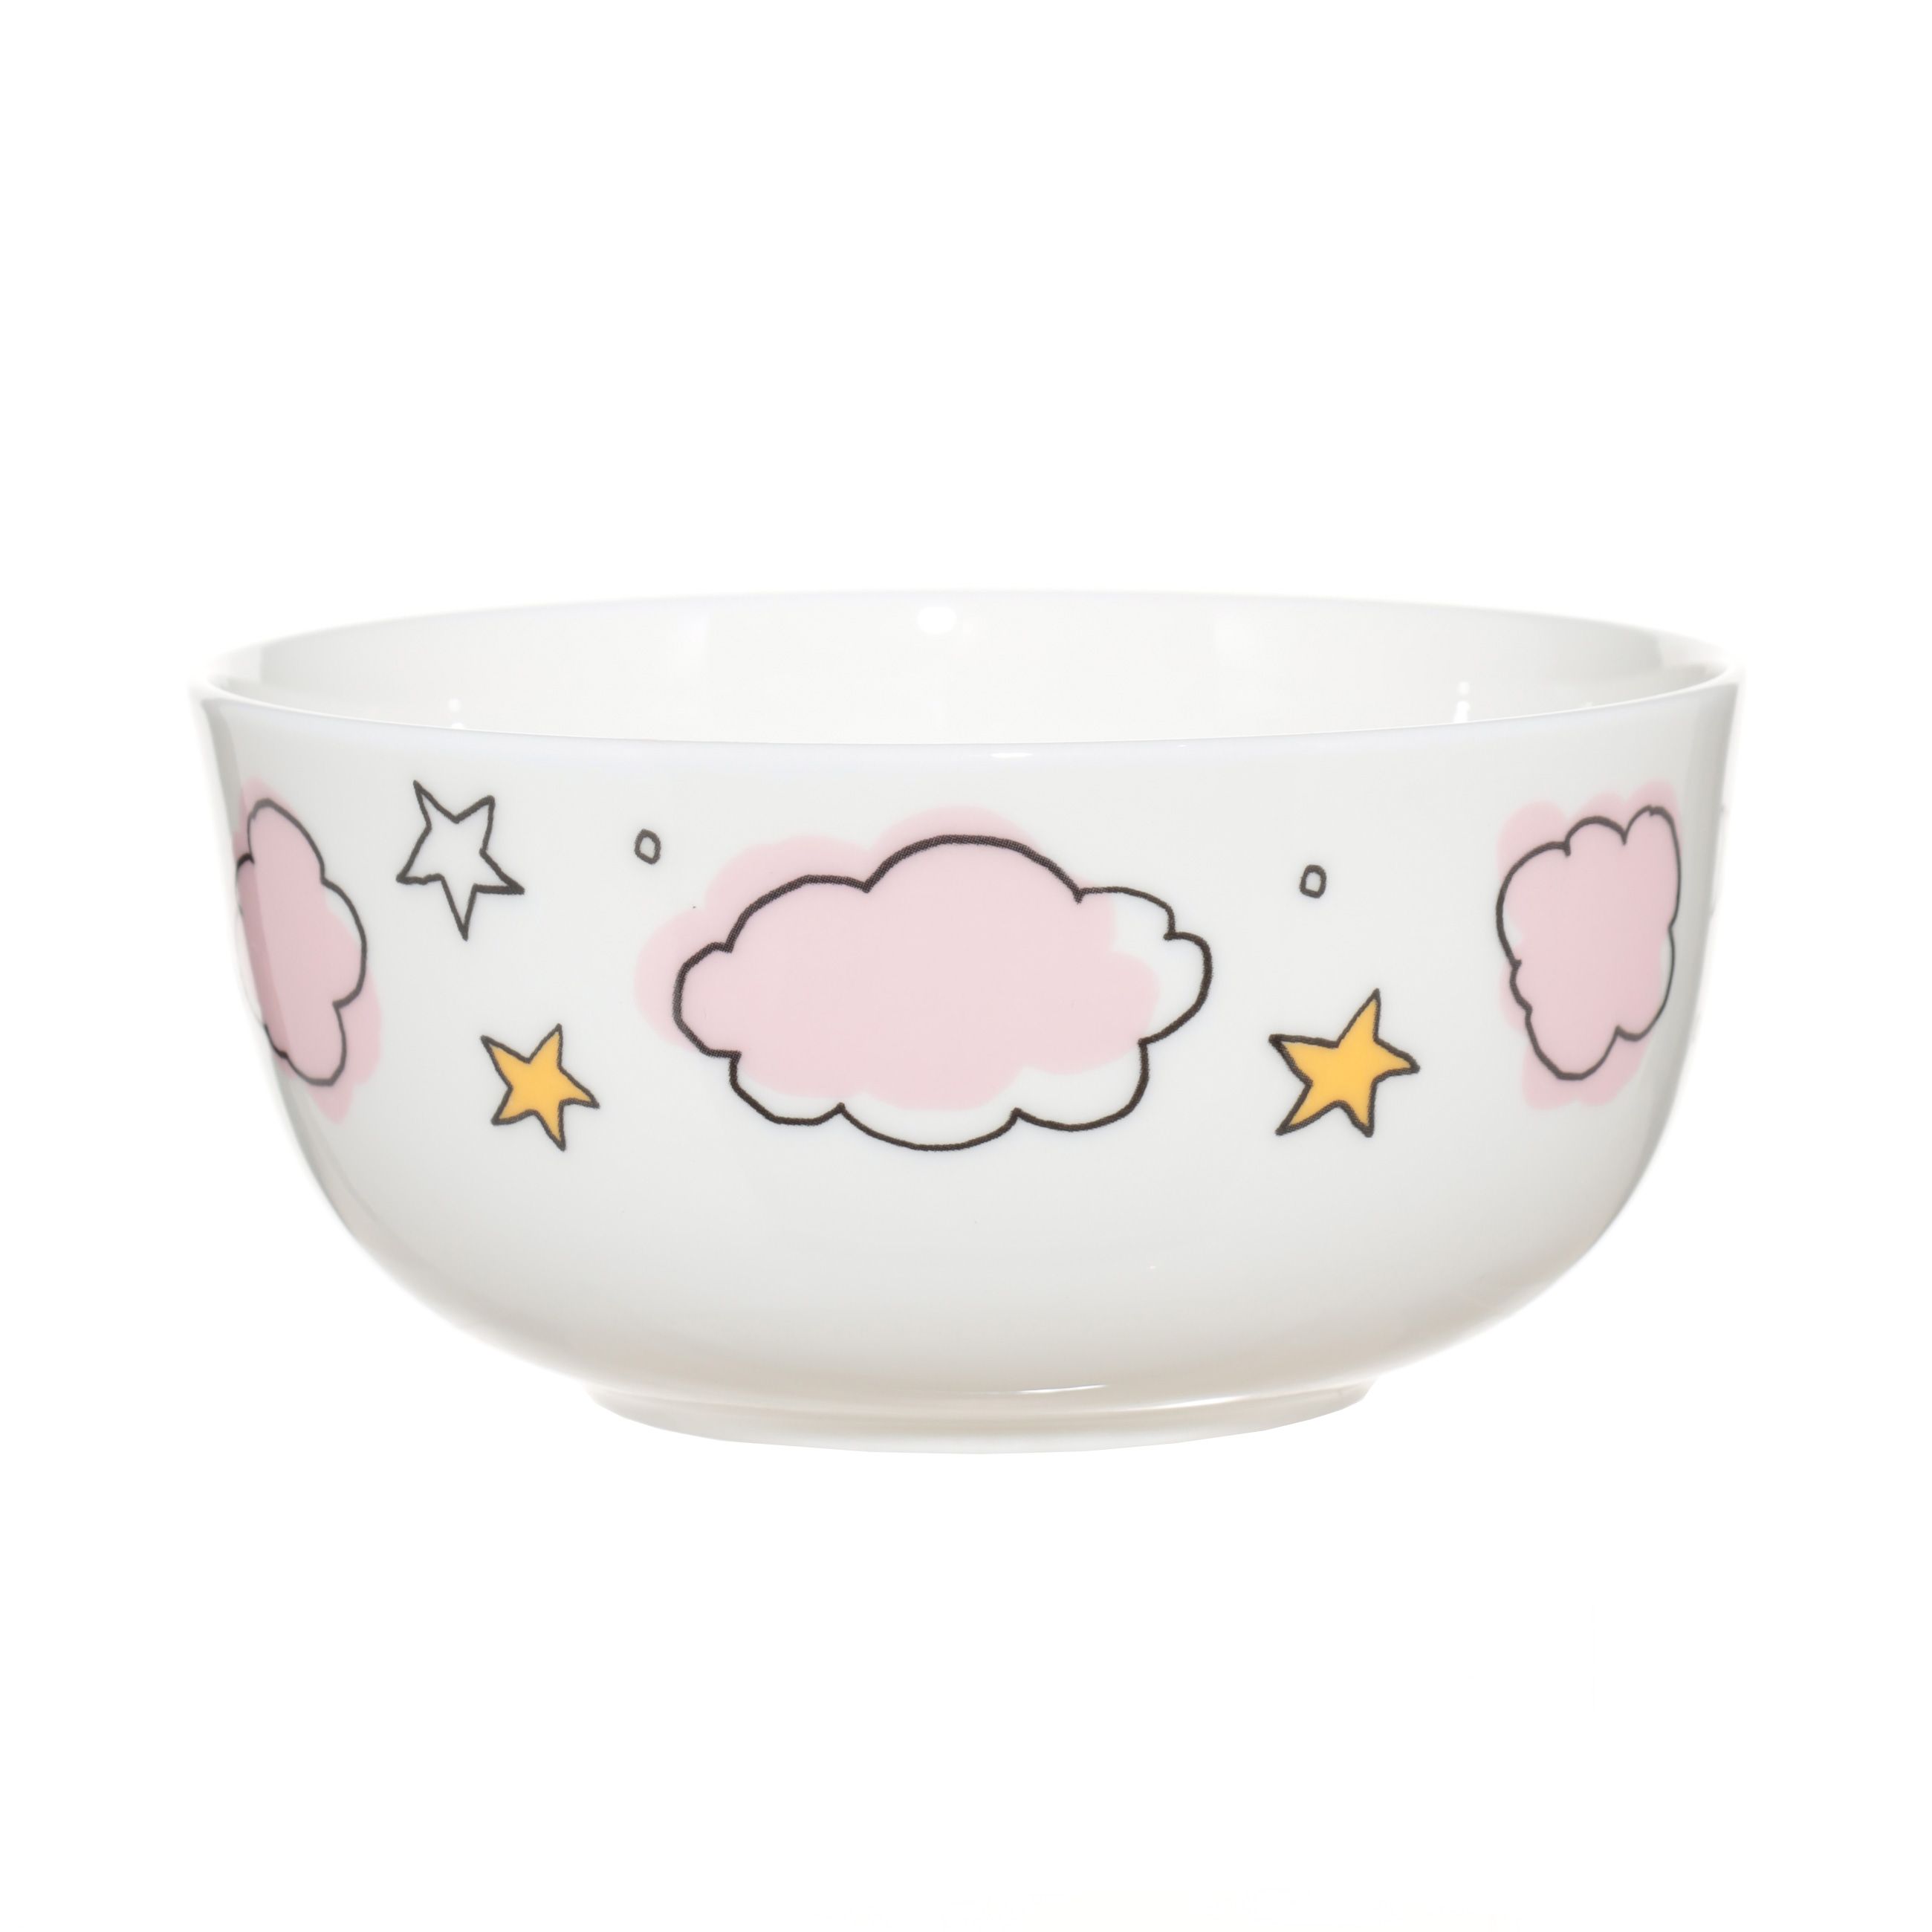 Набор посуды, детский, 3 пр, фарфор F, бело-розовый, Единорог в облаках, Unicorn изображение № 4